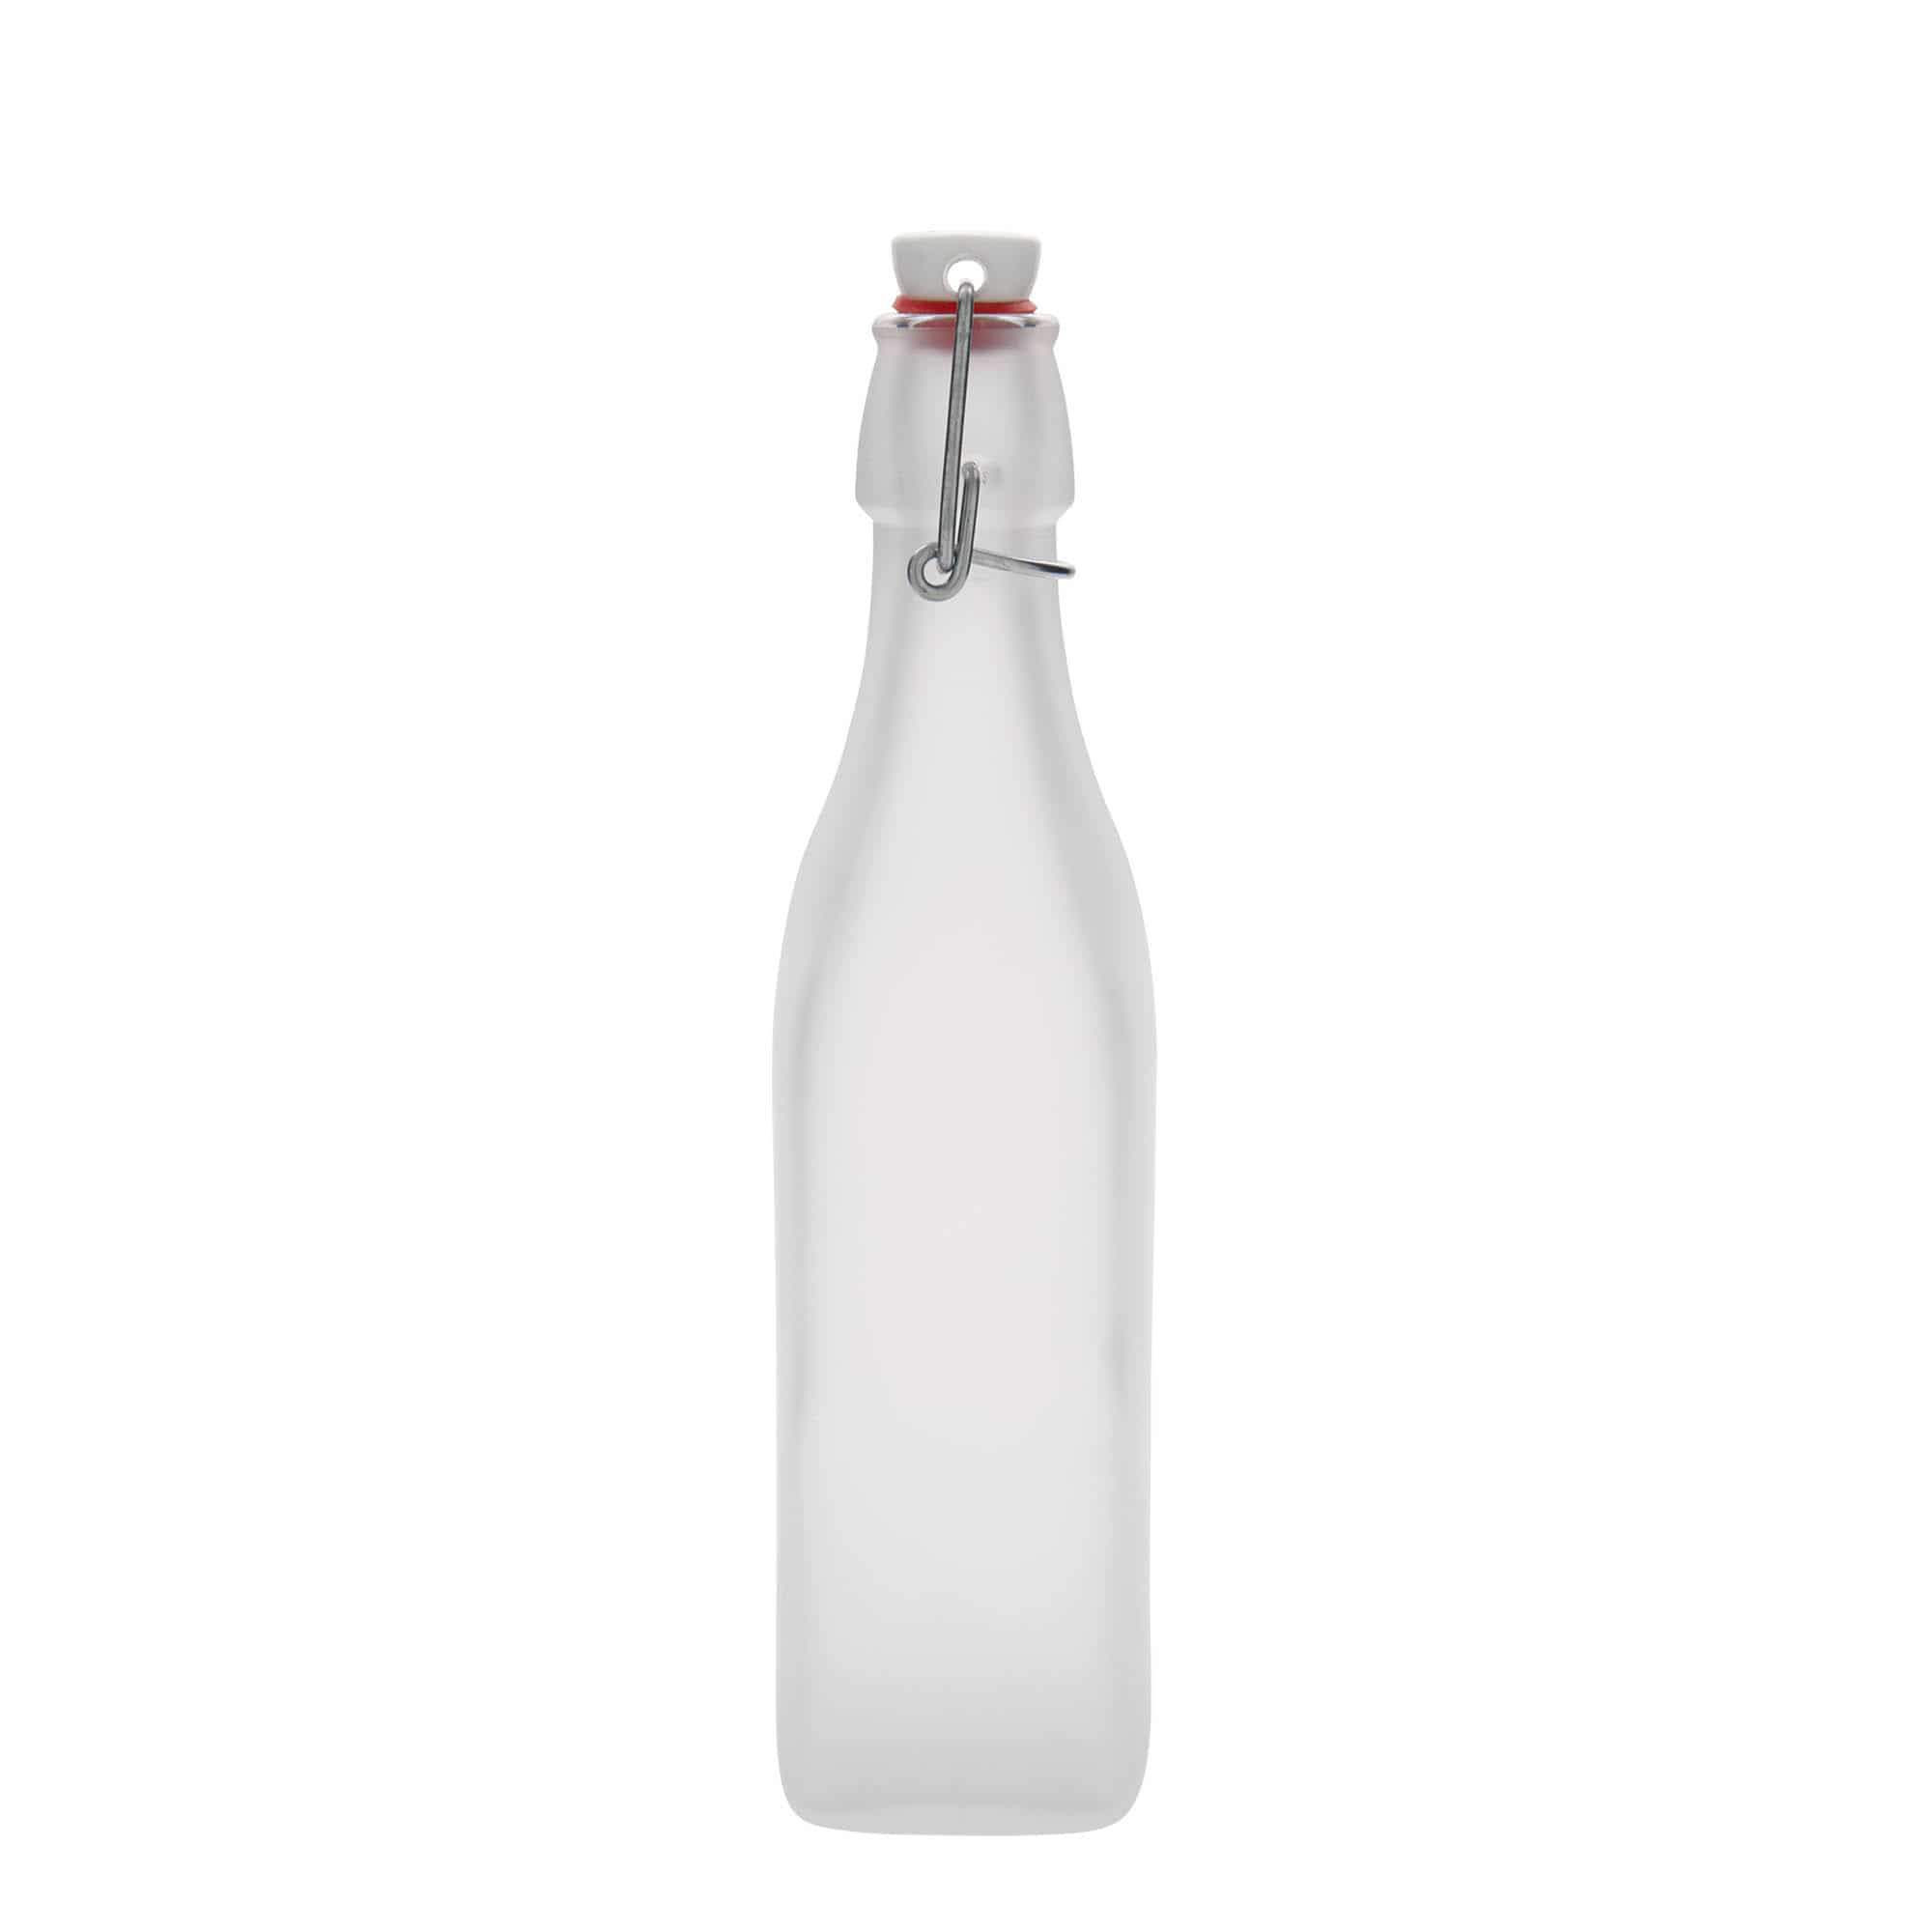 Tappo per Bottiglia PET bianco collo vite- Bordolese 1 L (100 pezzi) Vino